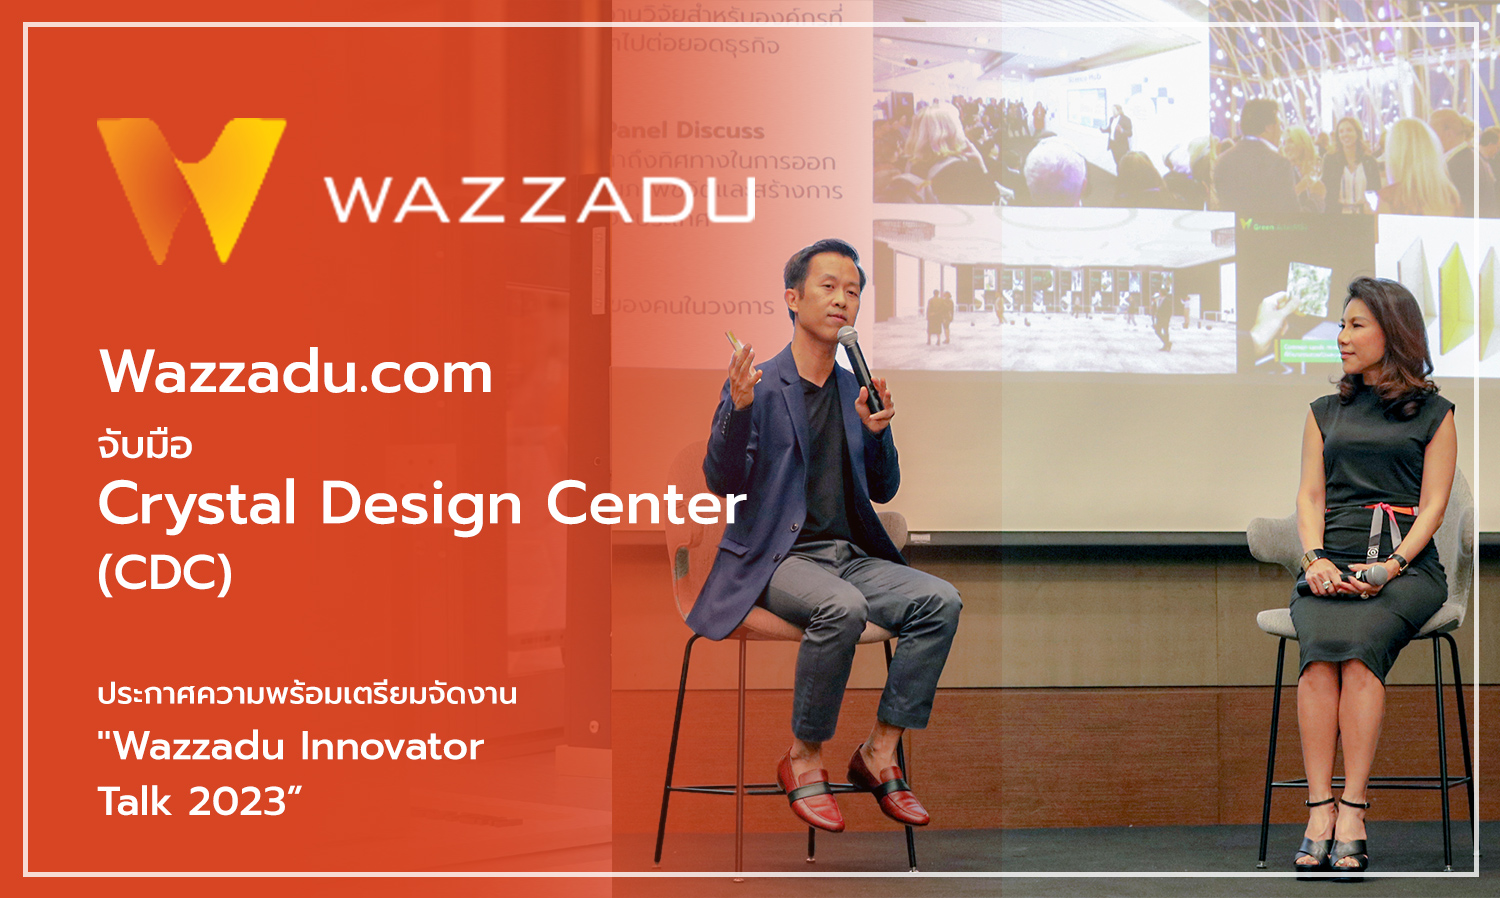 wazzadu-com-จับมือ-crystal-design-center-cdc- ประกาศความพร้